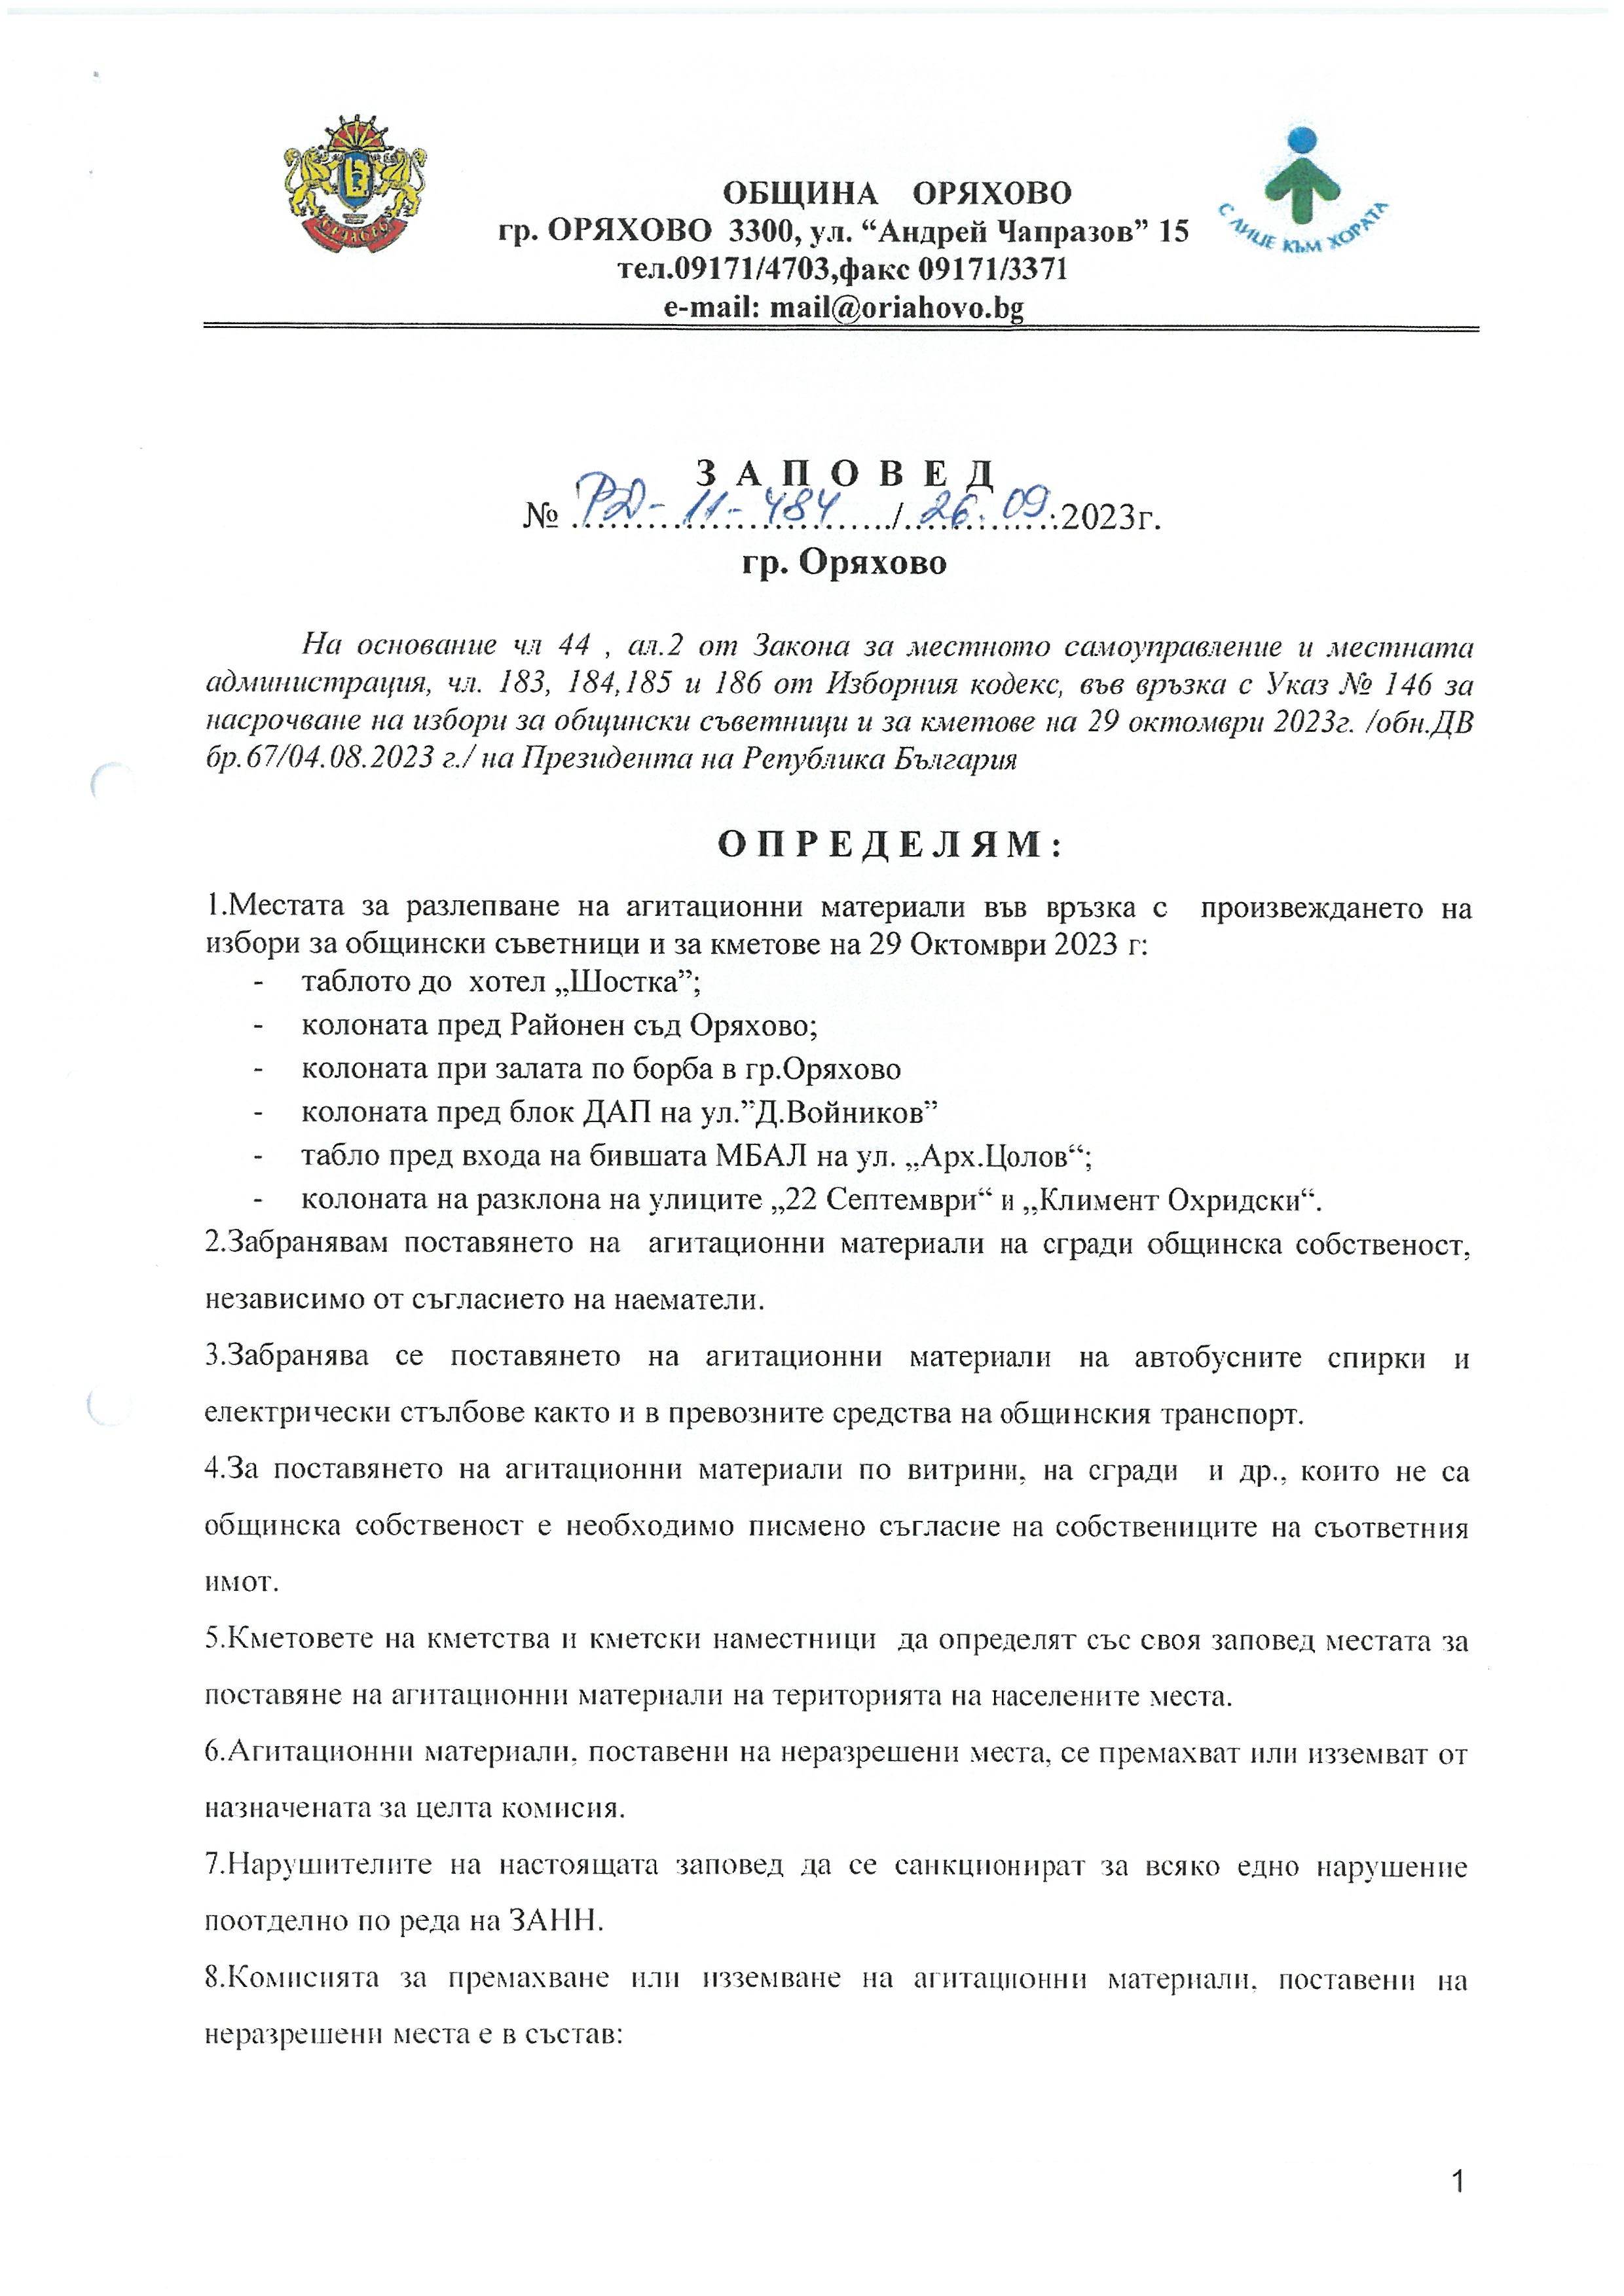 Заповед за определяне на местата и информационните табла на територията на Община Оряхово за поставяне на агитационните материали